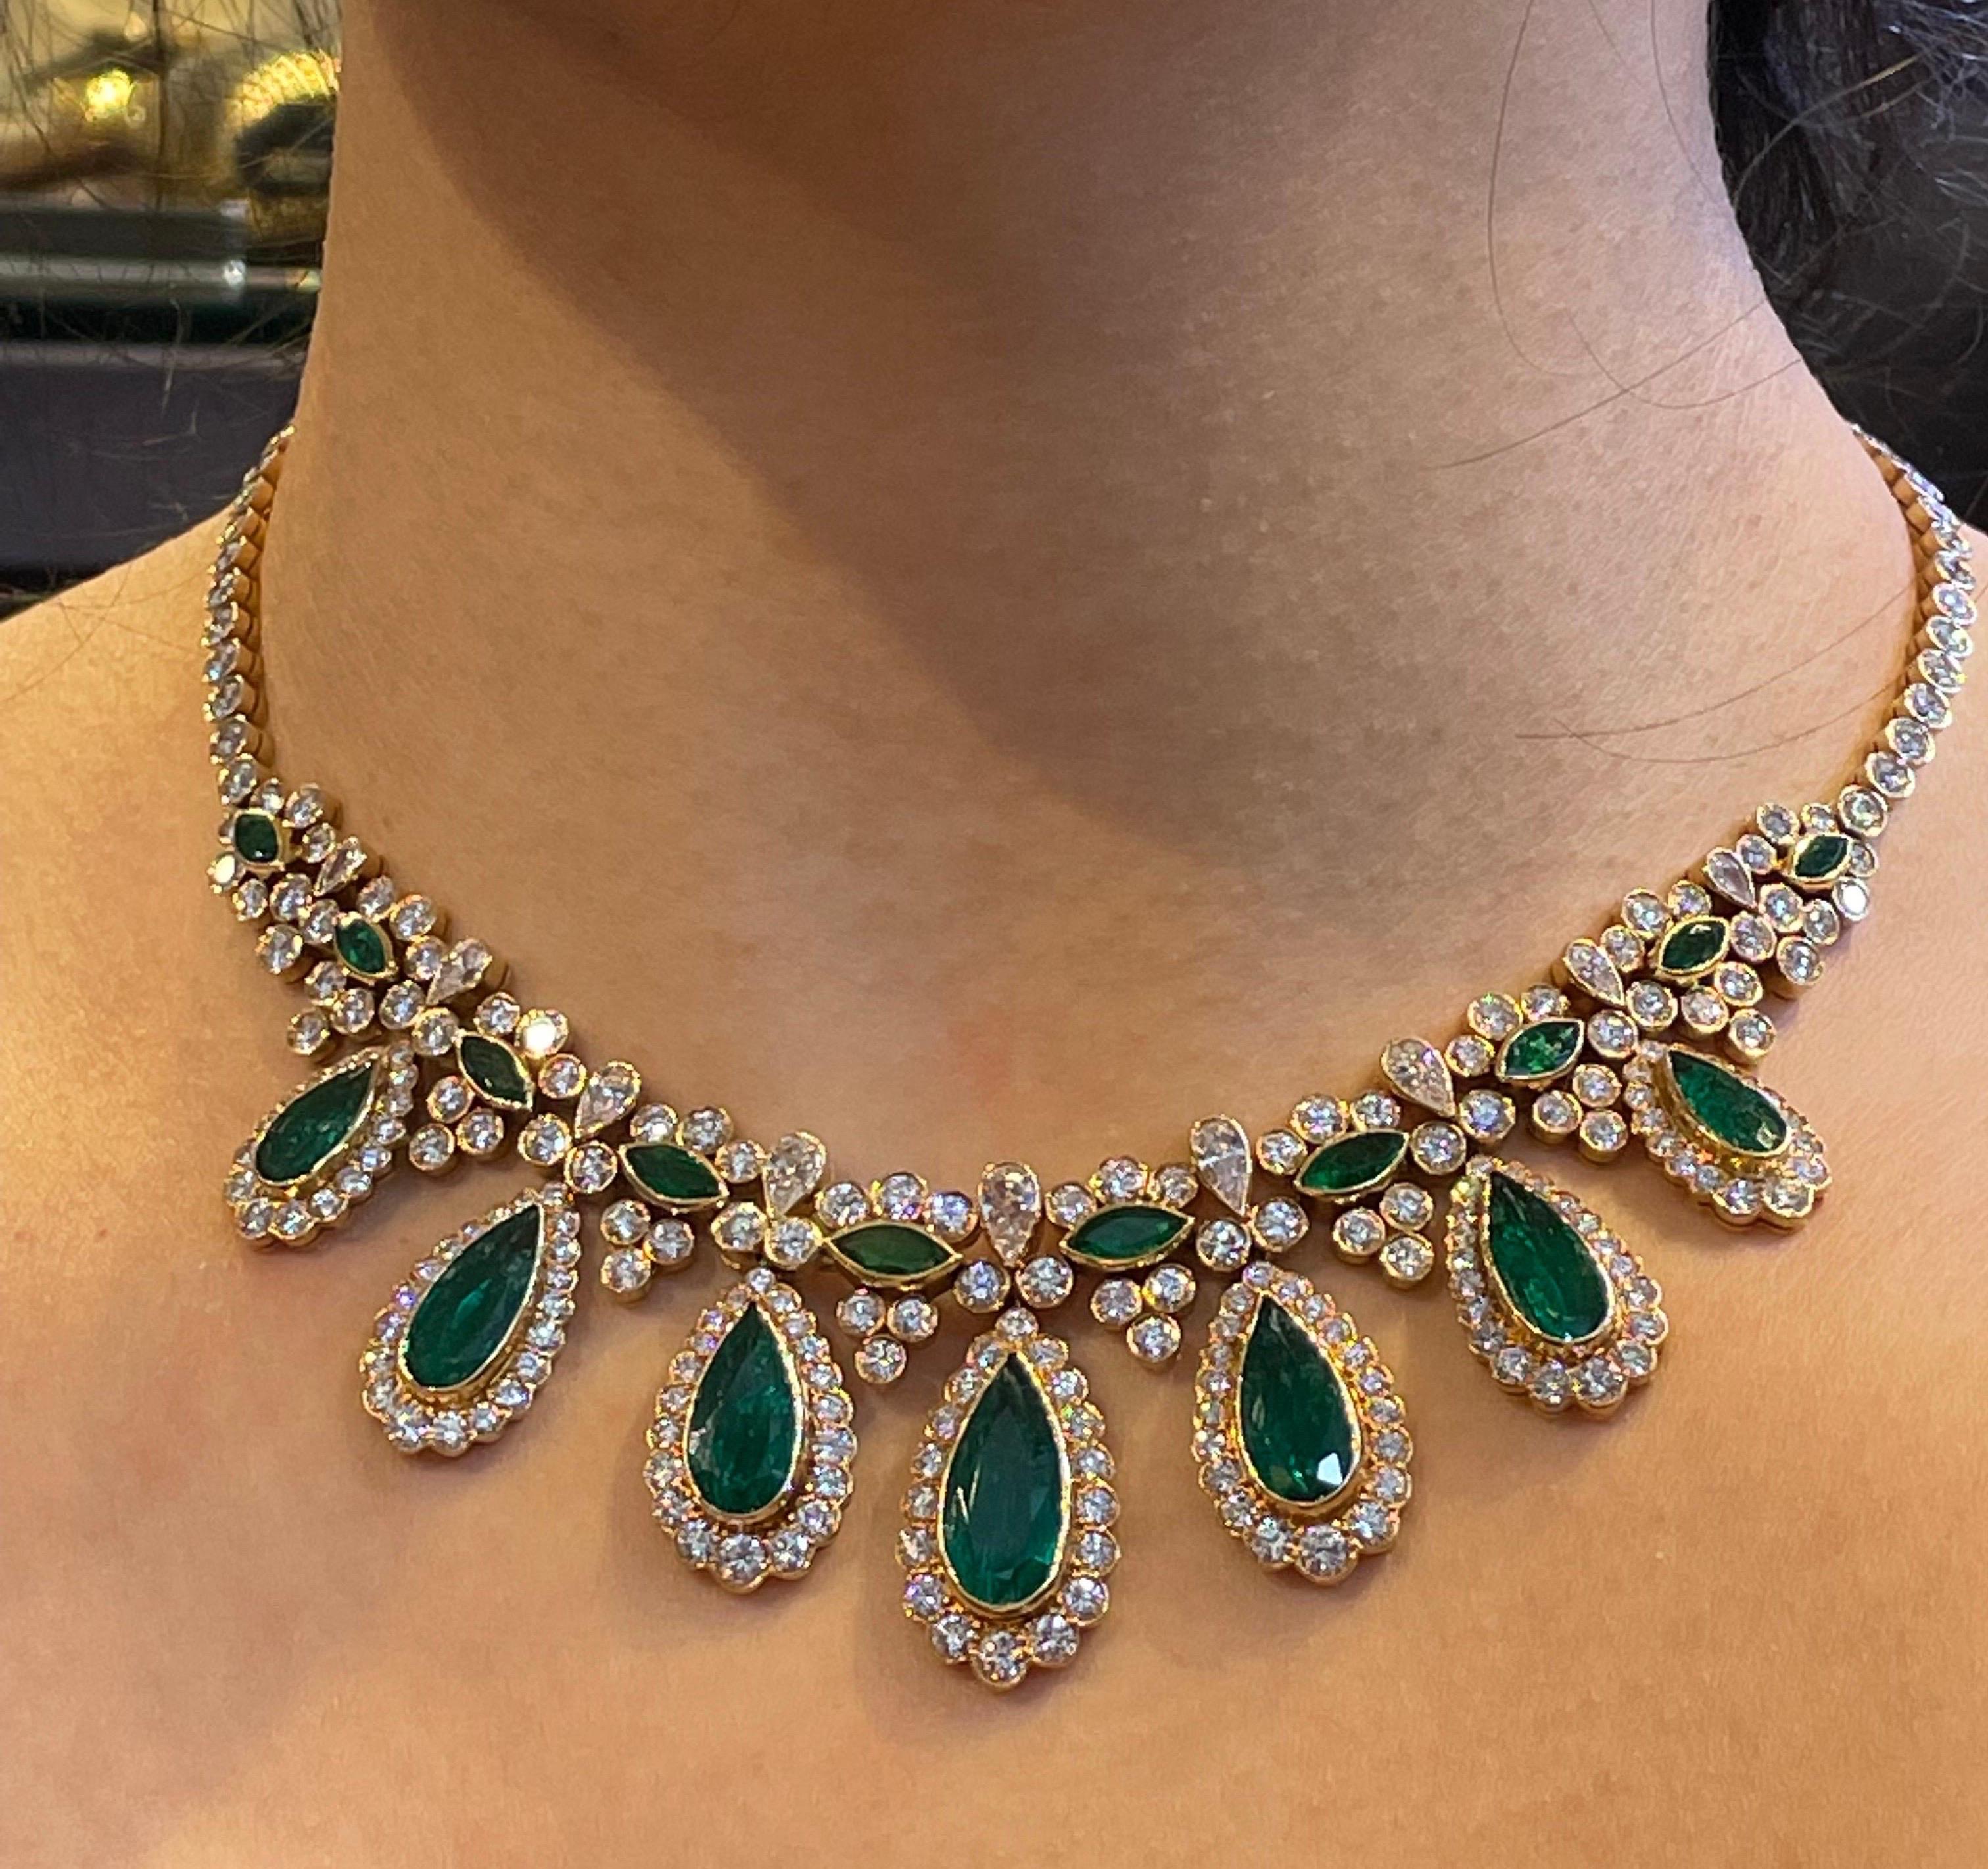 Van Cleef und Arpels Smaragd-Halskette 

Wunderschönes Collier aus Birnensmaragd und Gold mit 7 zertifizierten kolumbianischen Smaragden in Birnenform. 

Begleitet von einem AGL-Laborzertifikat für die Smaragde, aus dem hervorgeht, dass sie